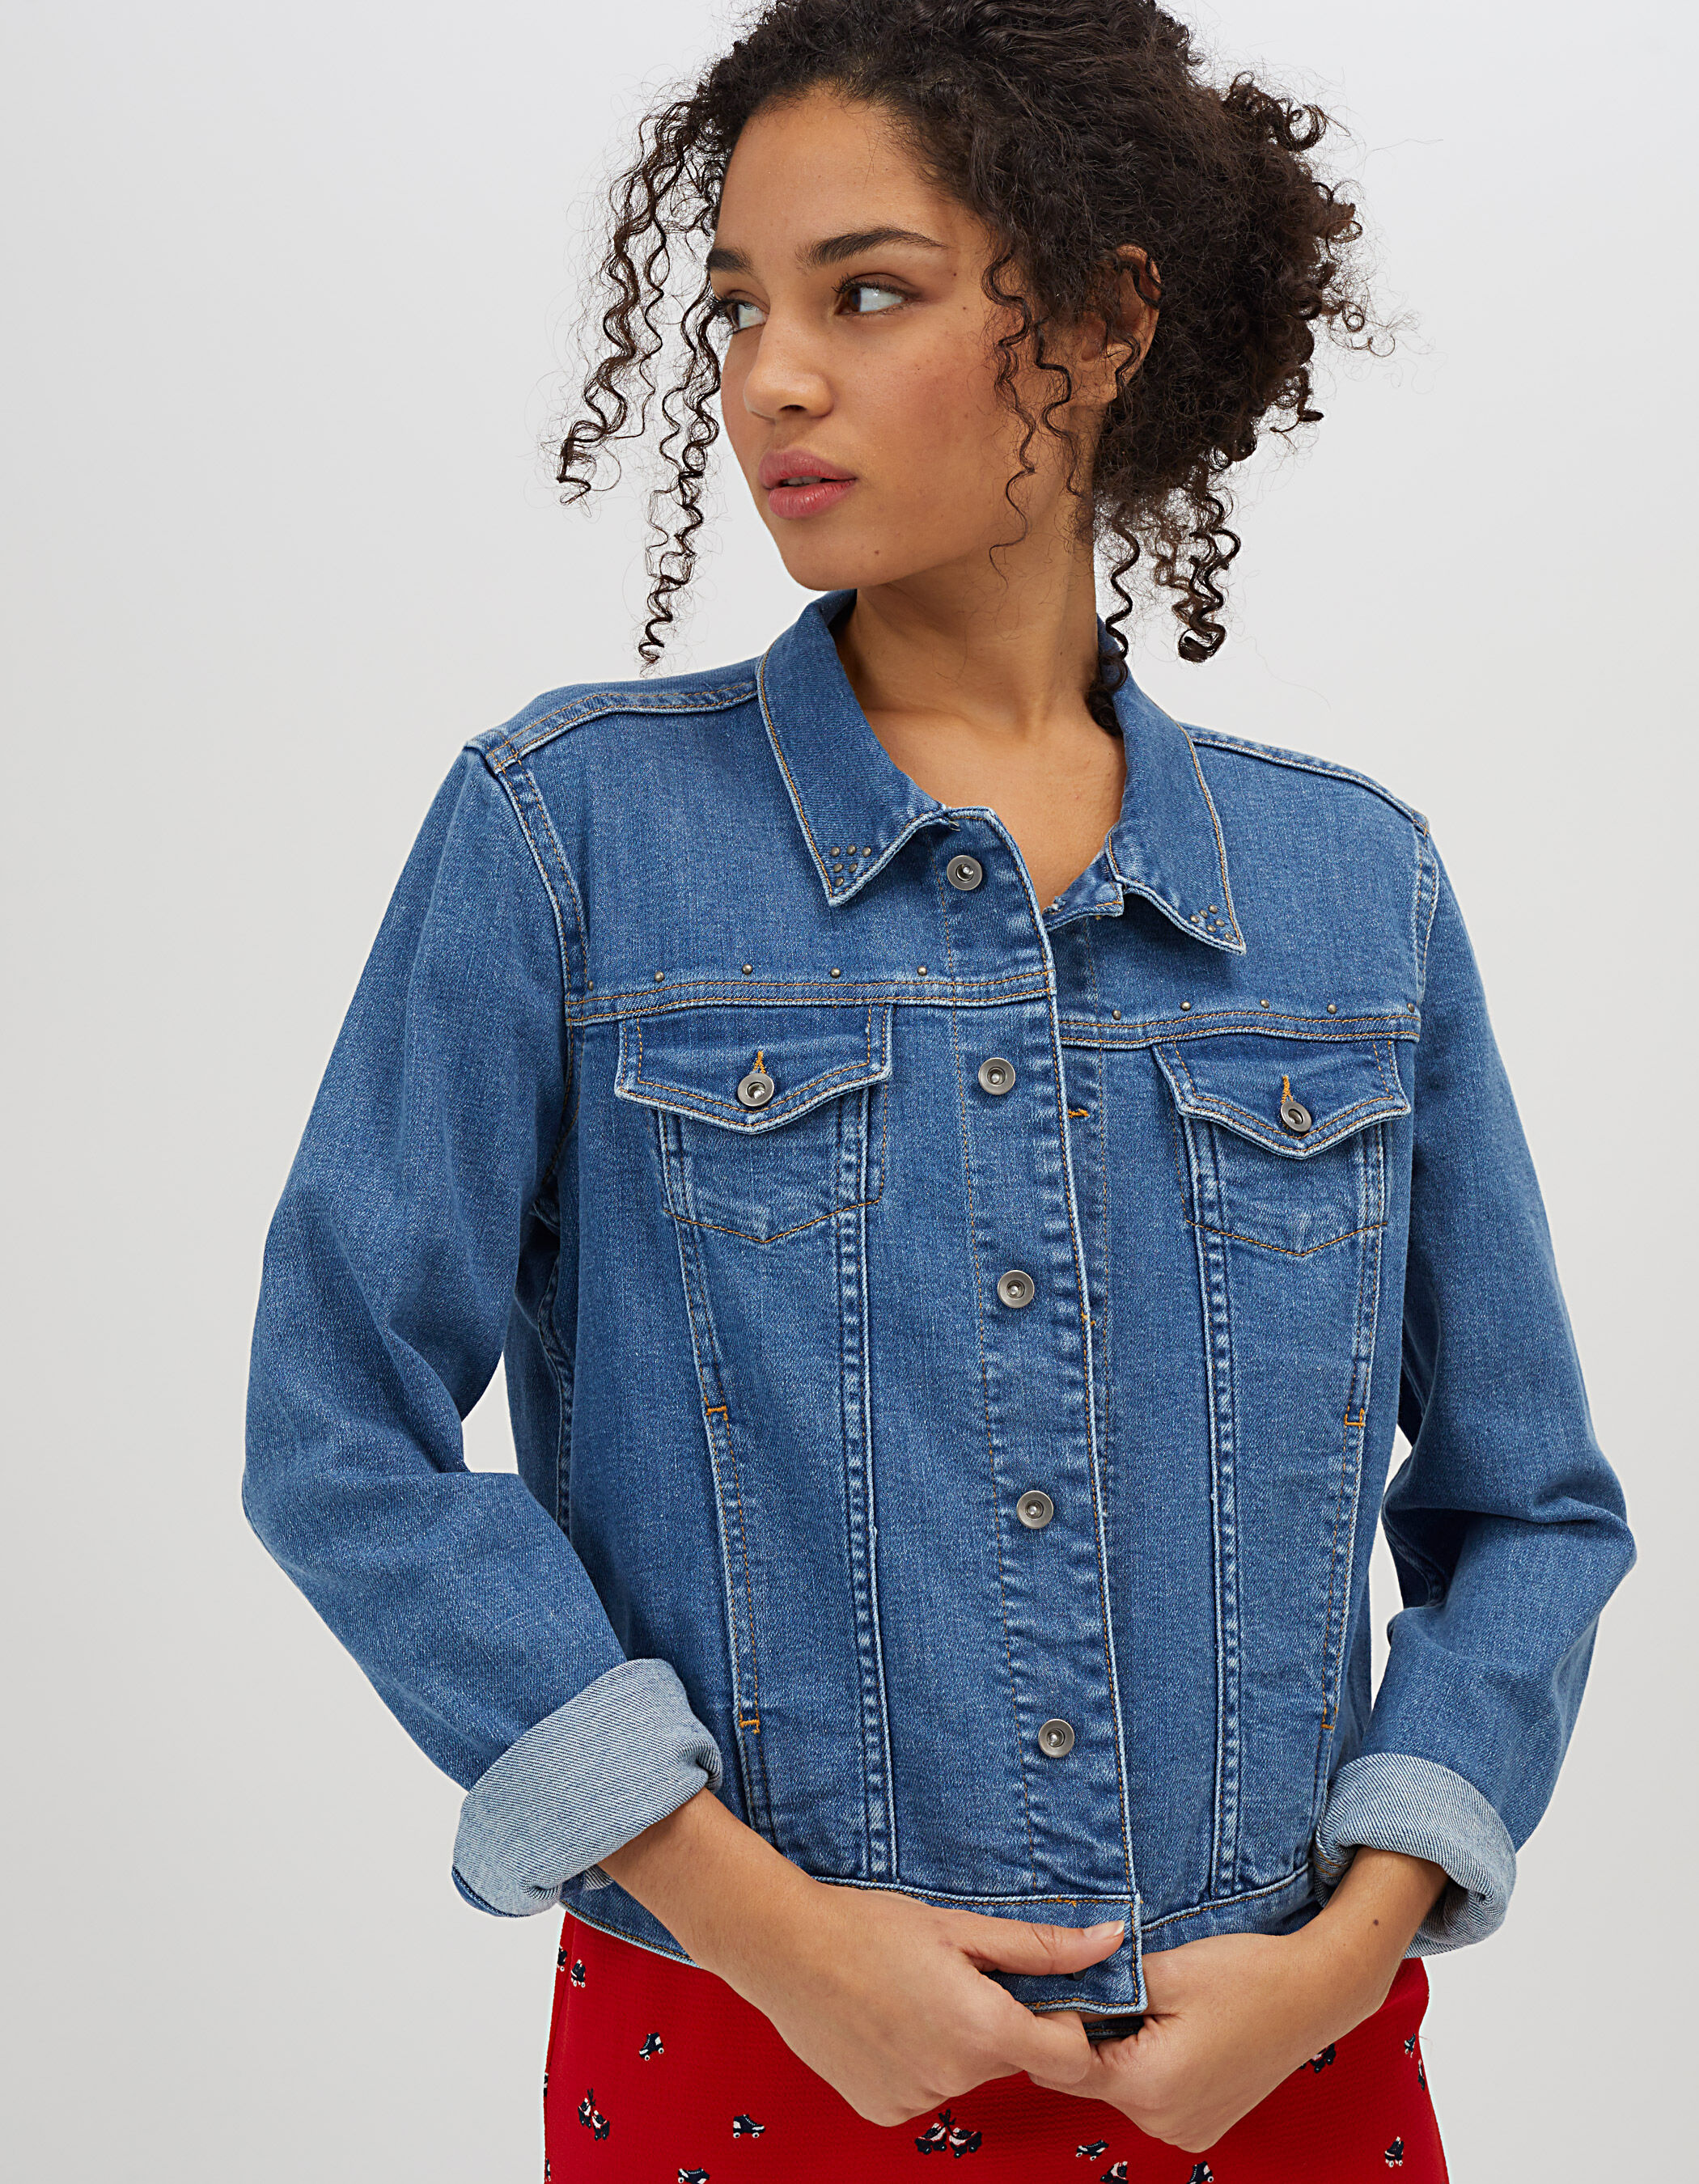 Wrangler Jeans Jacke l Authentic Jacket ! l Review l On Body l Haul l  Outlet46.de - YouTube